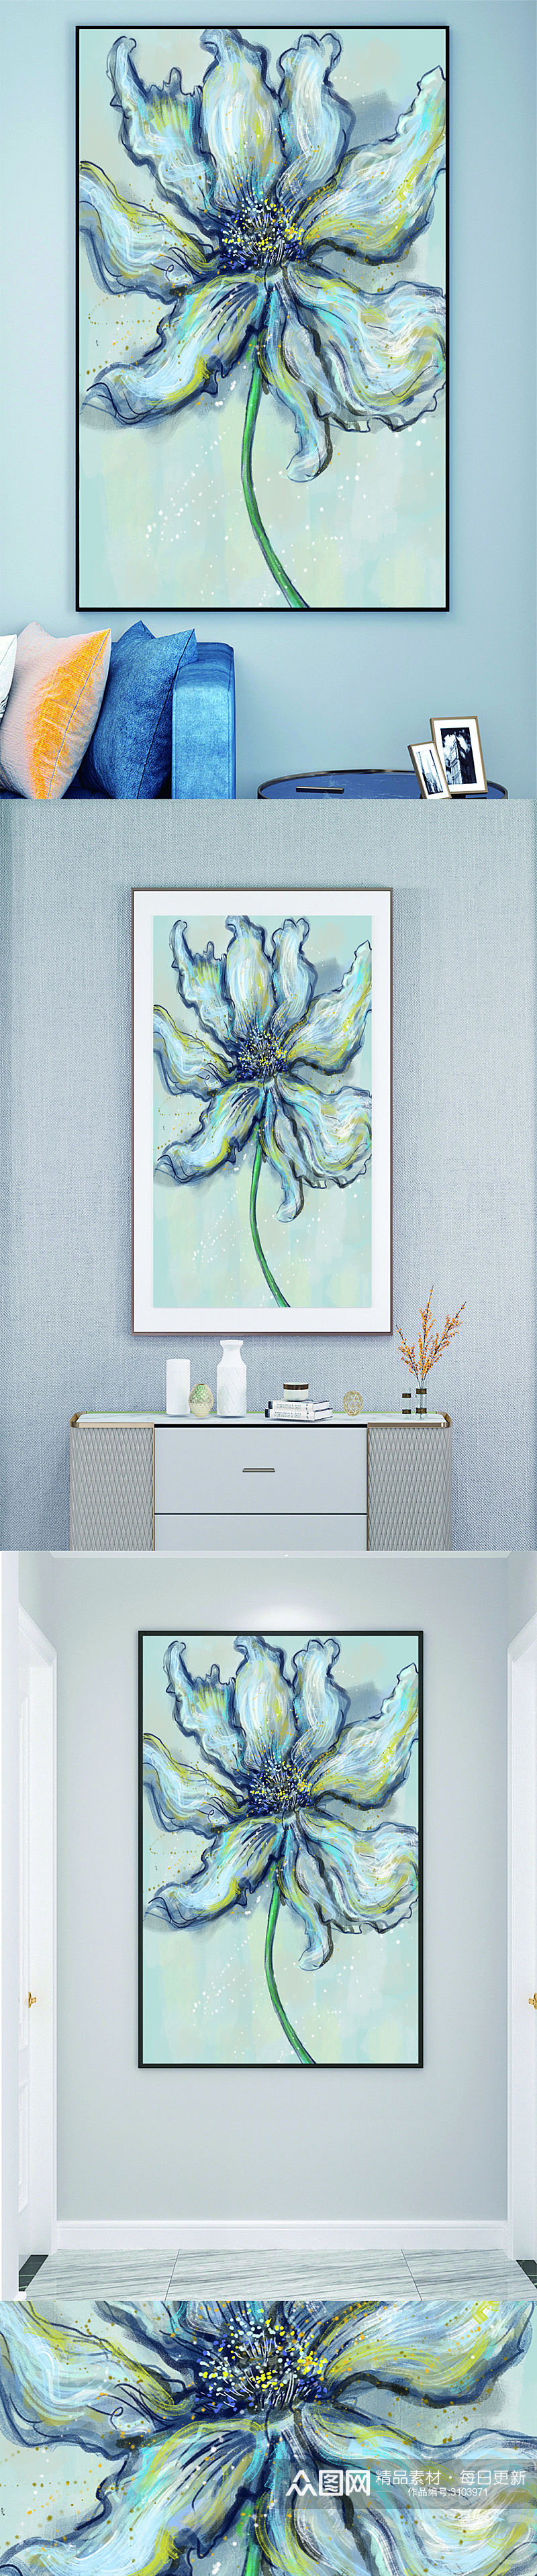 油画蓝色鲜花装饰画壁画素材